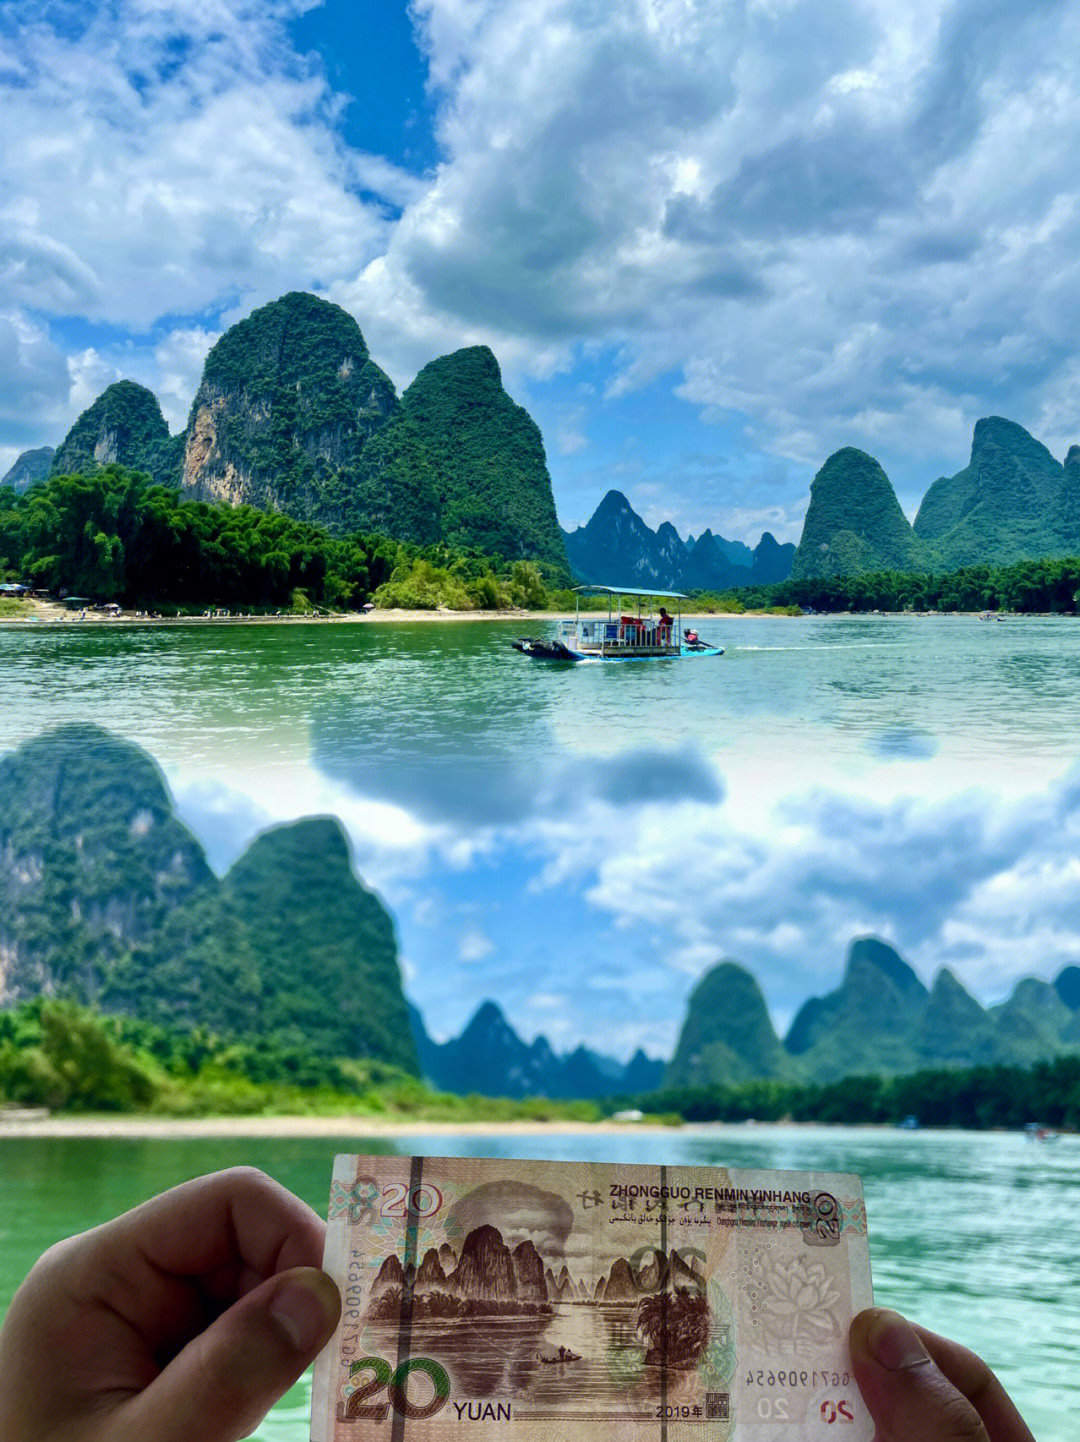 20元人民币壁纸图片